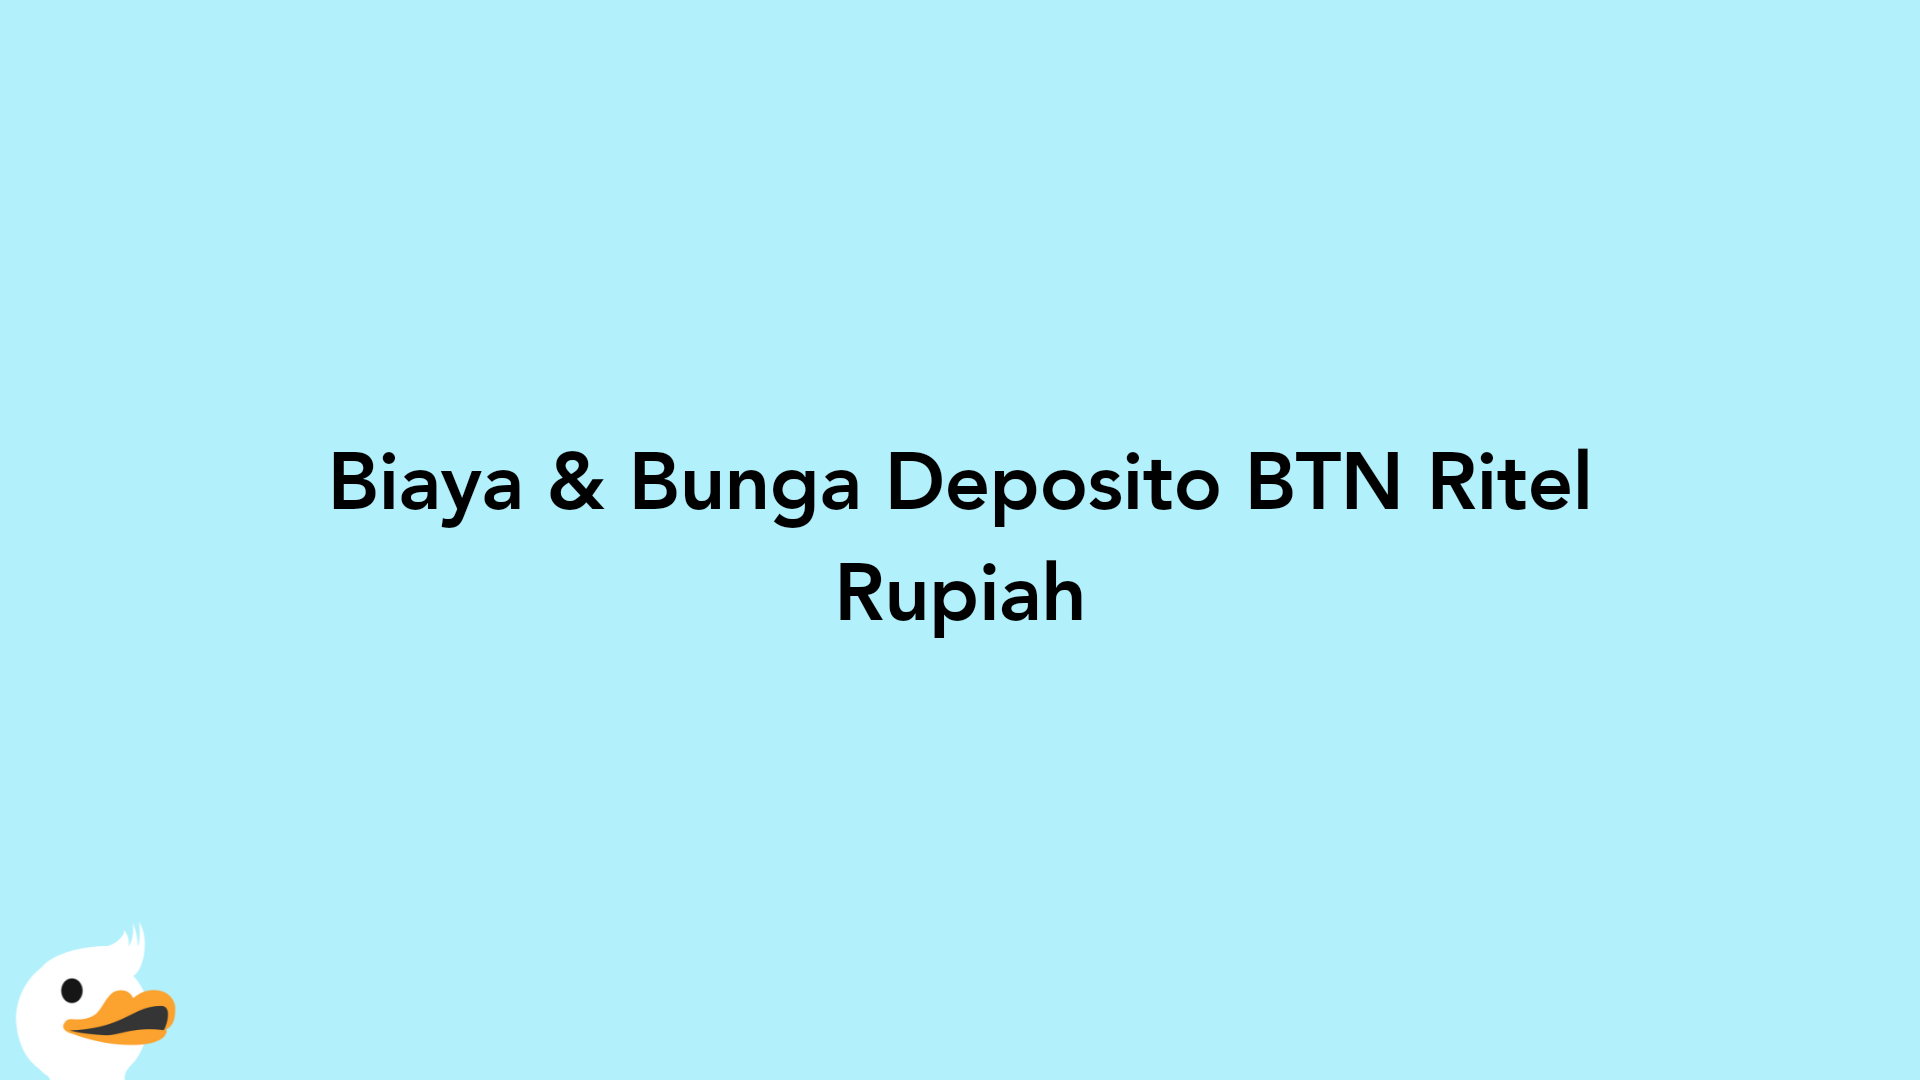 Biaya & Bunga Deposito BTN Ritel Rupiah